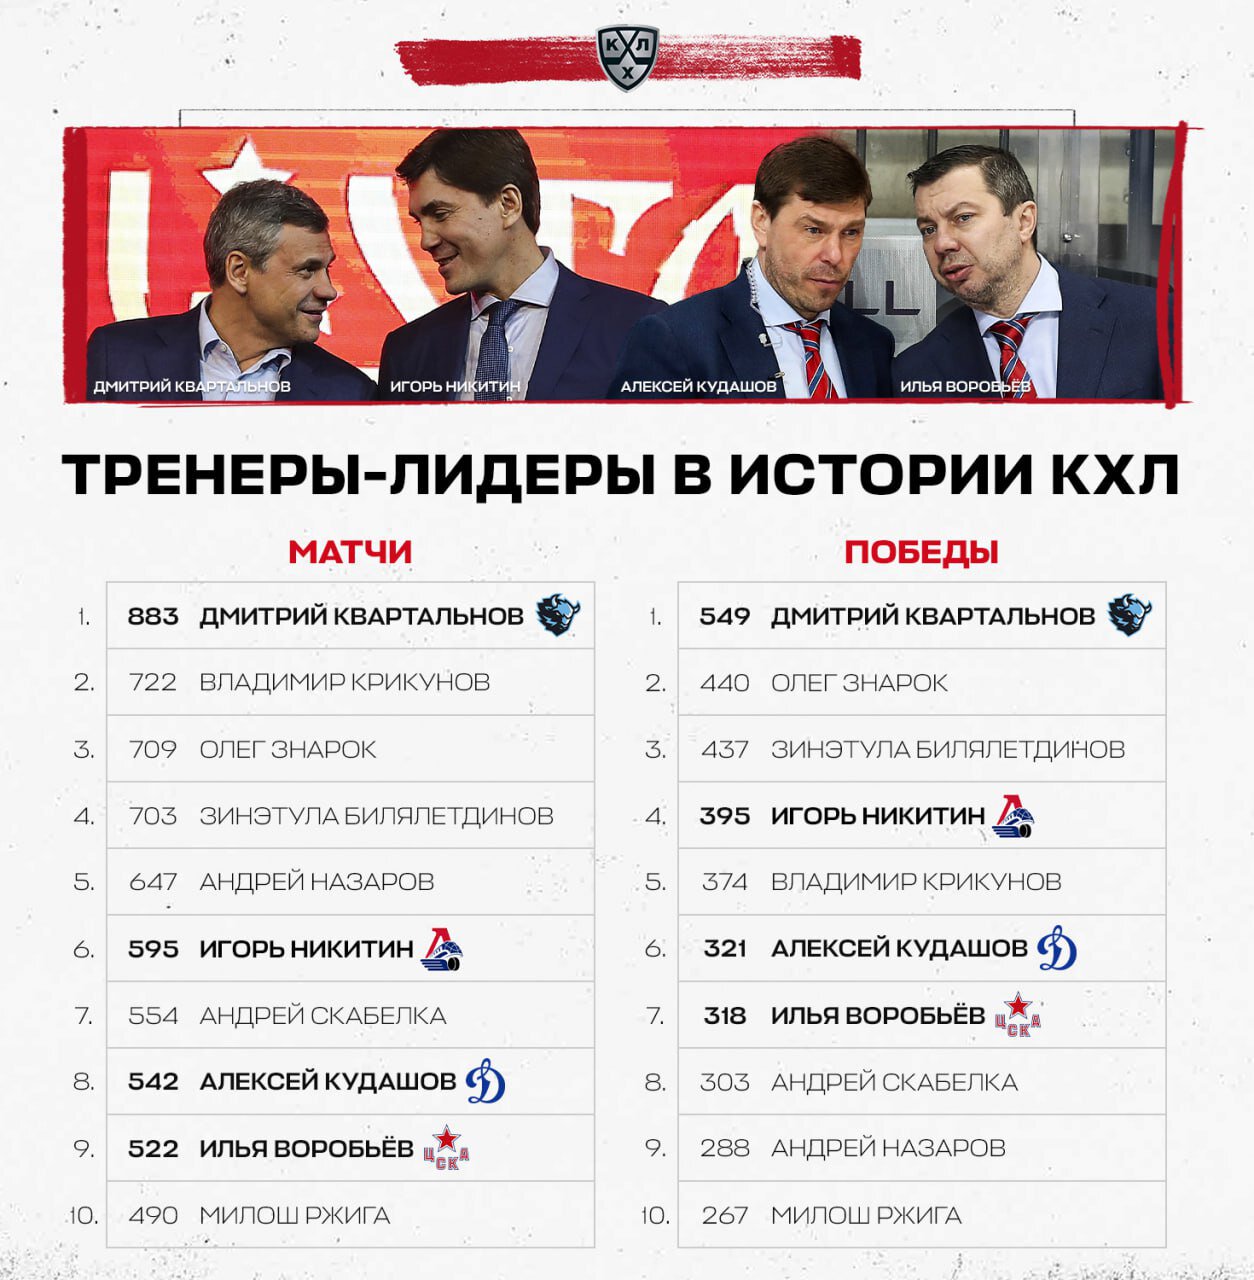 У Квартальнова больше всех побед в КХЛ среди тренеров – 549 матчей. Знарок и Билялетдинов – в топ-3